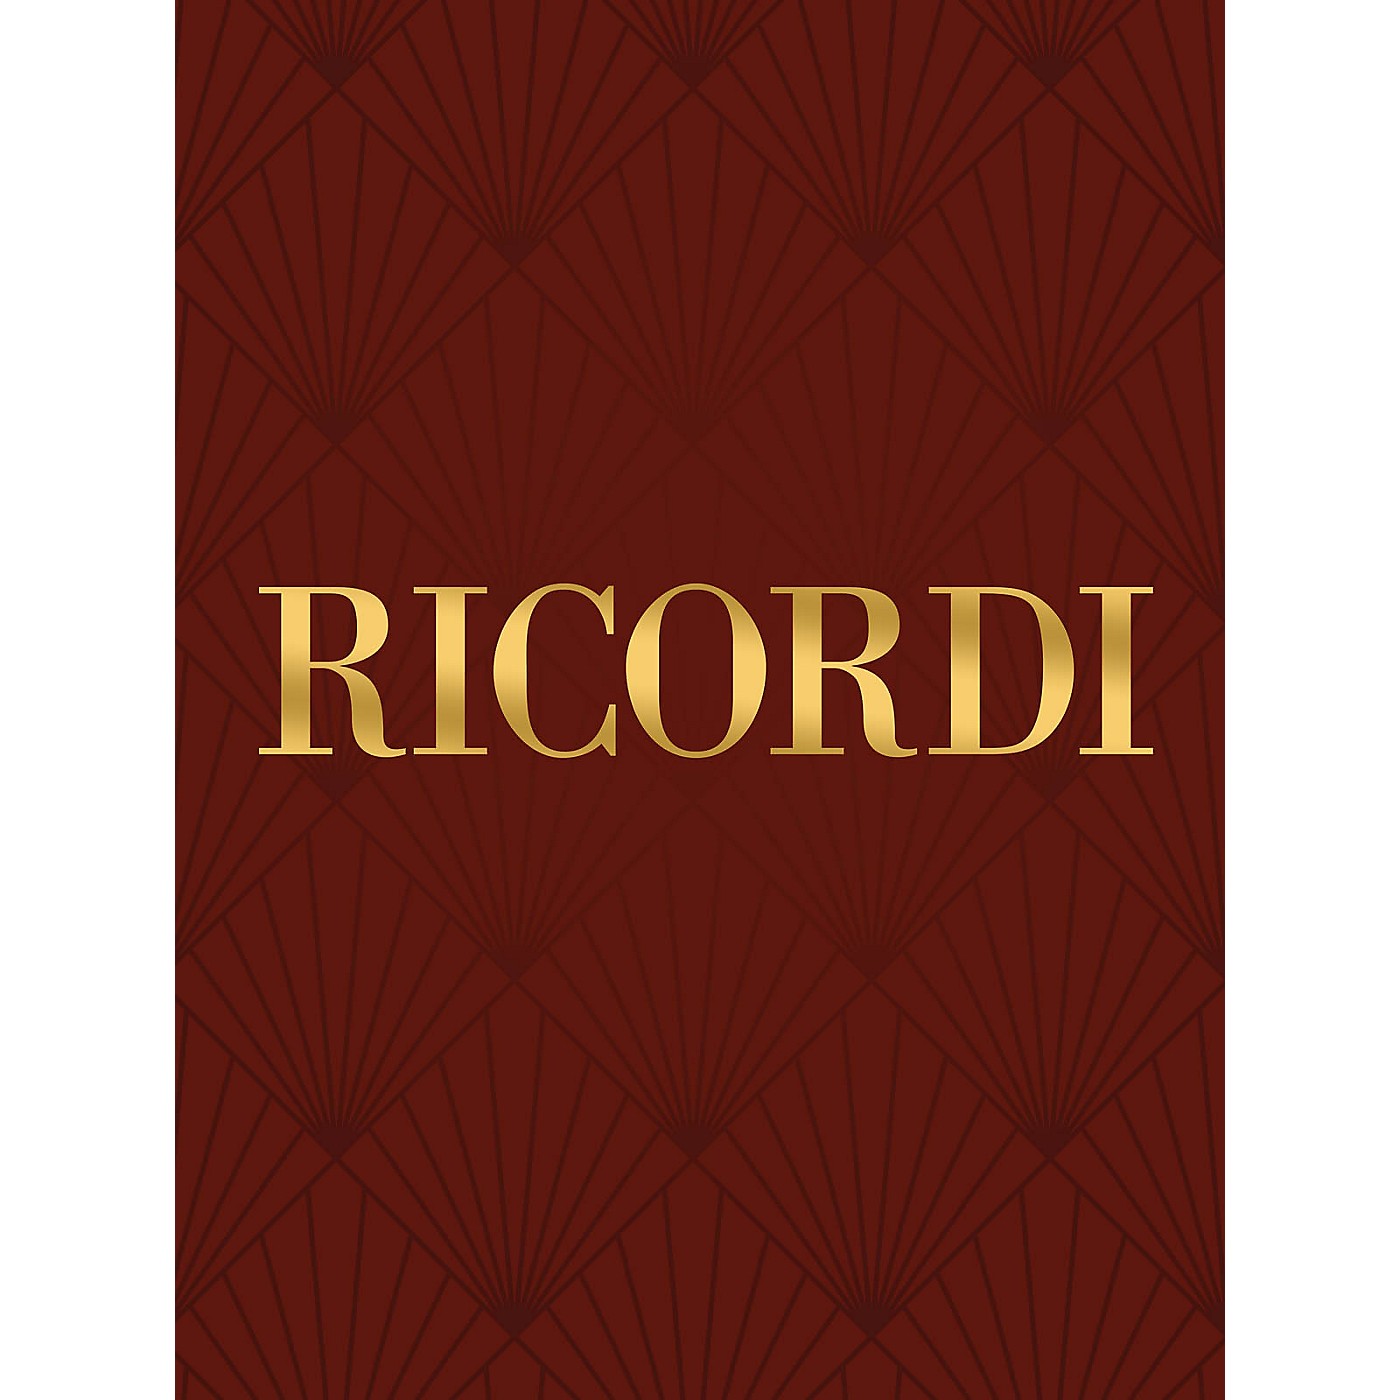 Ricordi Concerto in C Study Score Series Composed by Tomaso Giovanni Albinoni Edited by Giazotto thumbnail